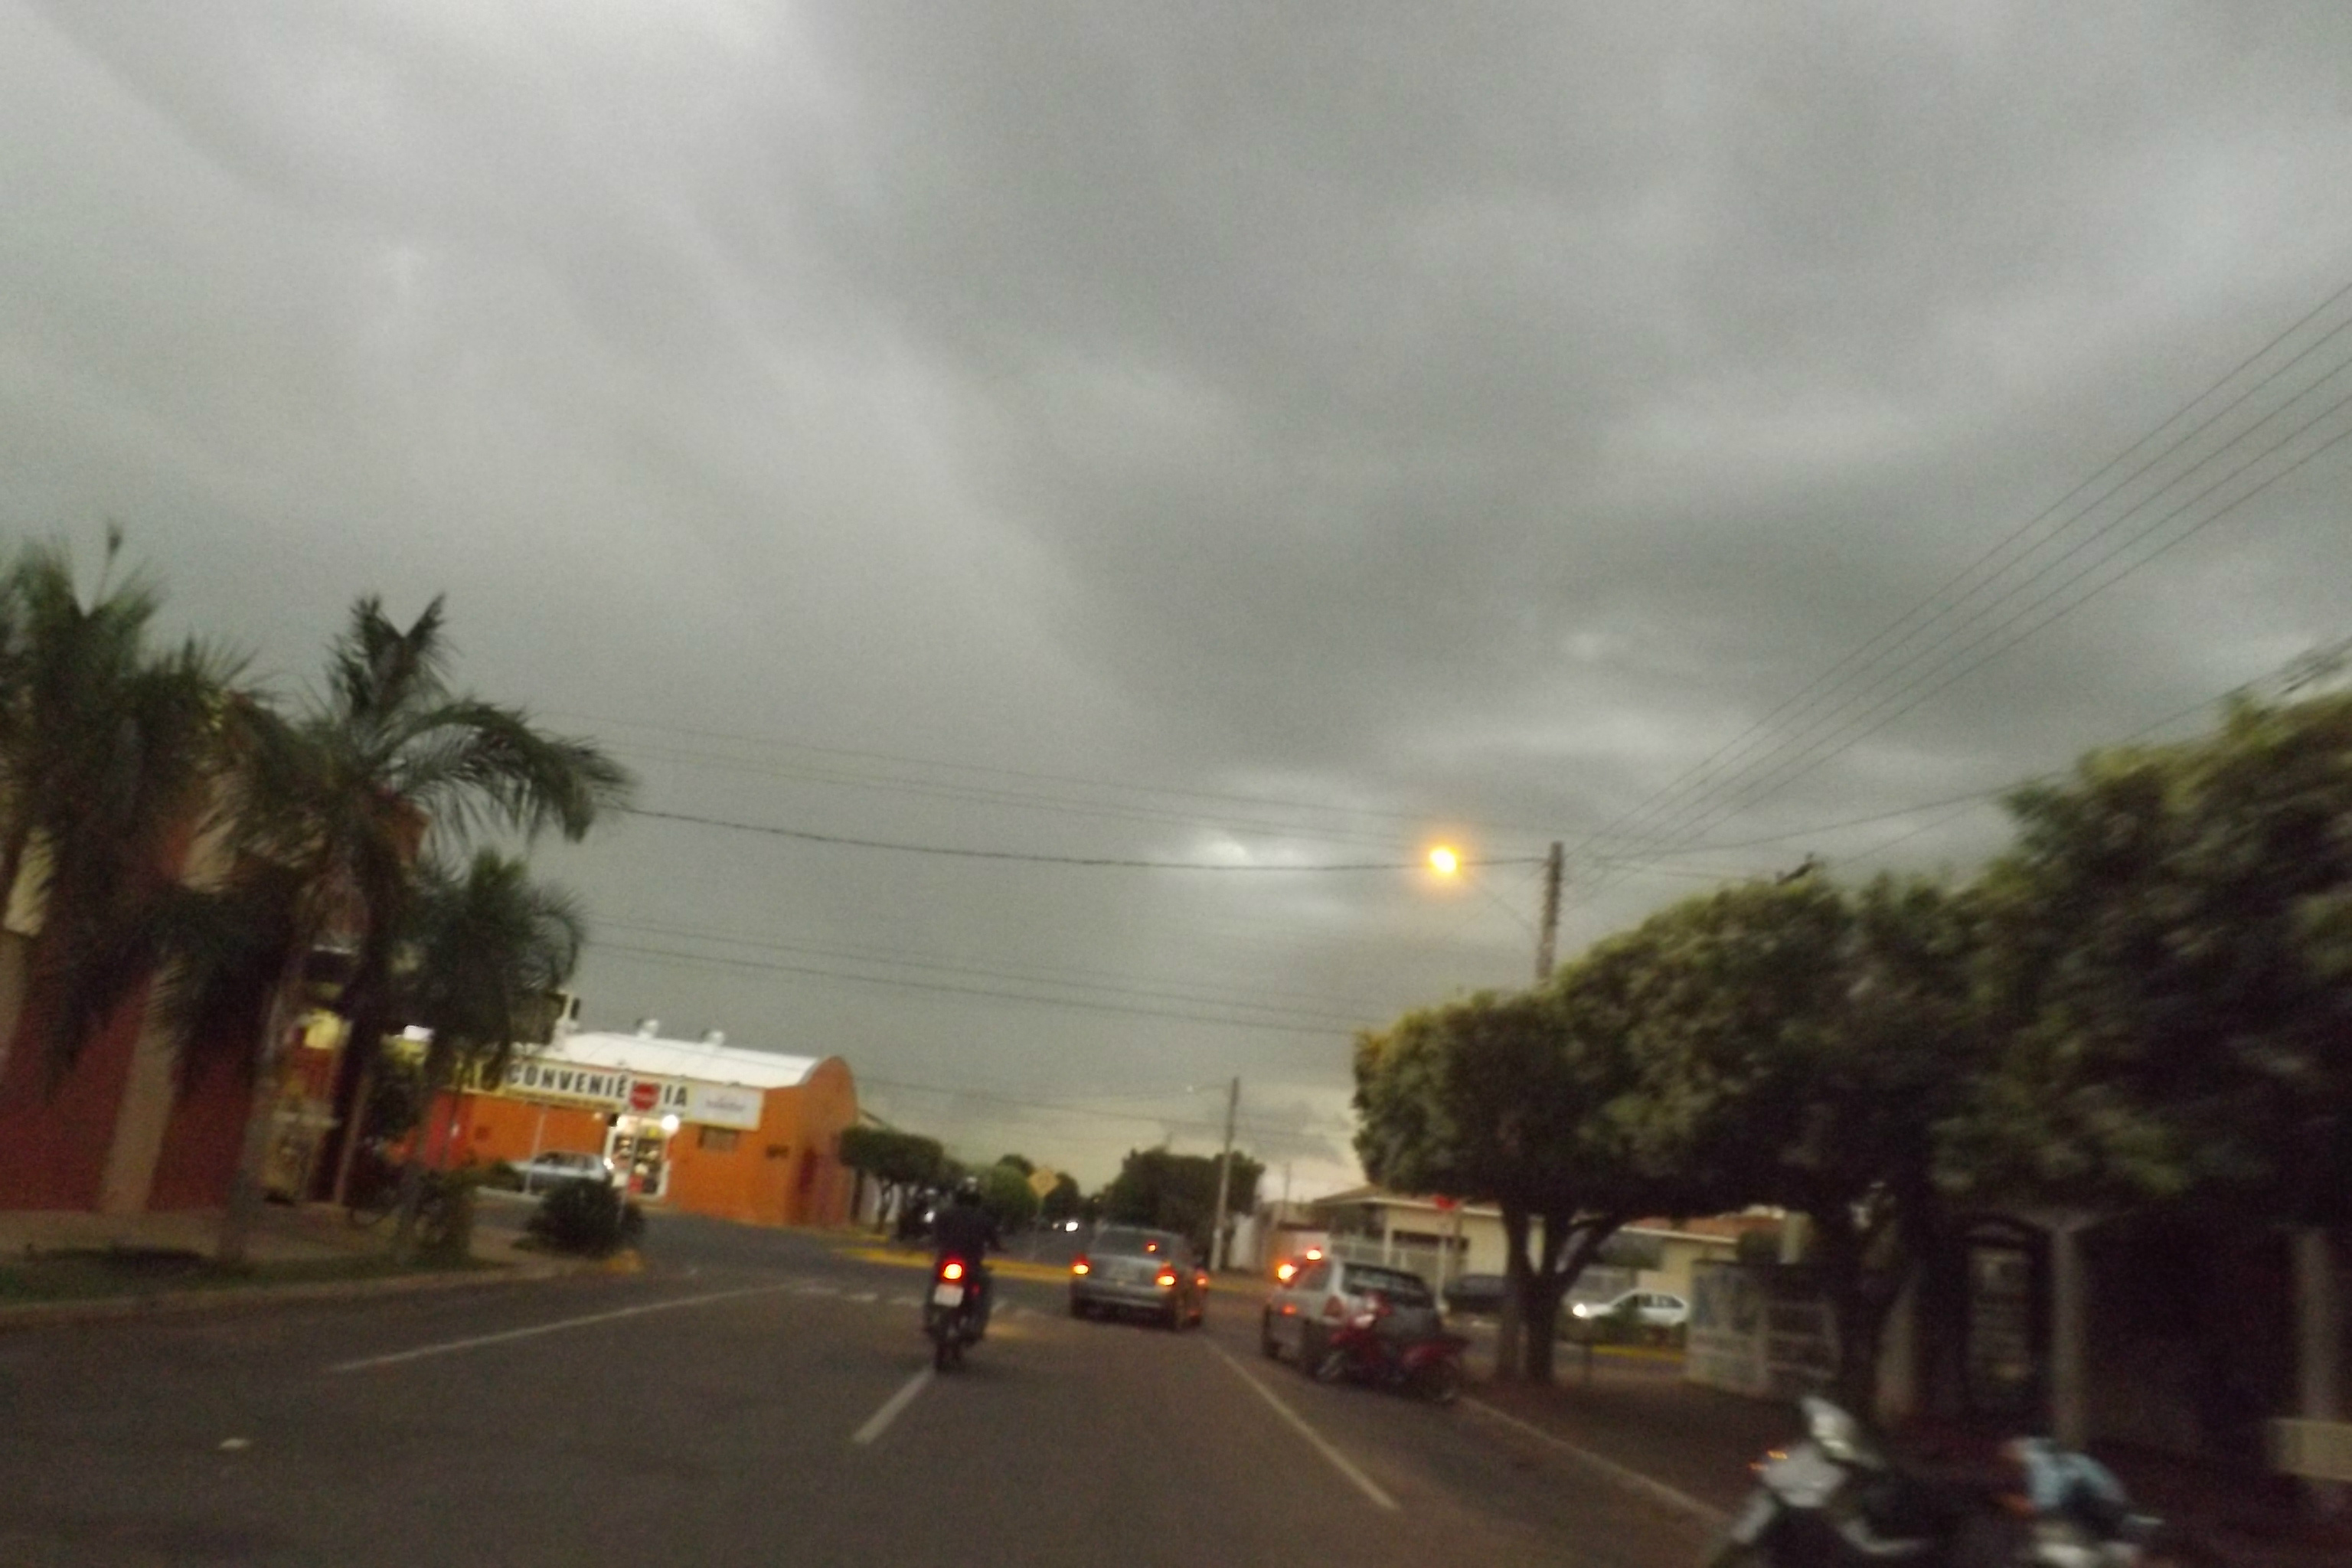 04h45 da tarde: o céu de Três Lagoas começa a escurecer, com nuvens negras encobrindo (Foto: Edivelton Kologi)